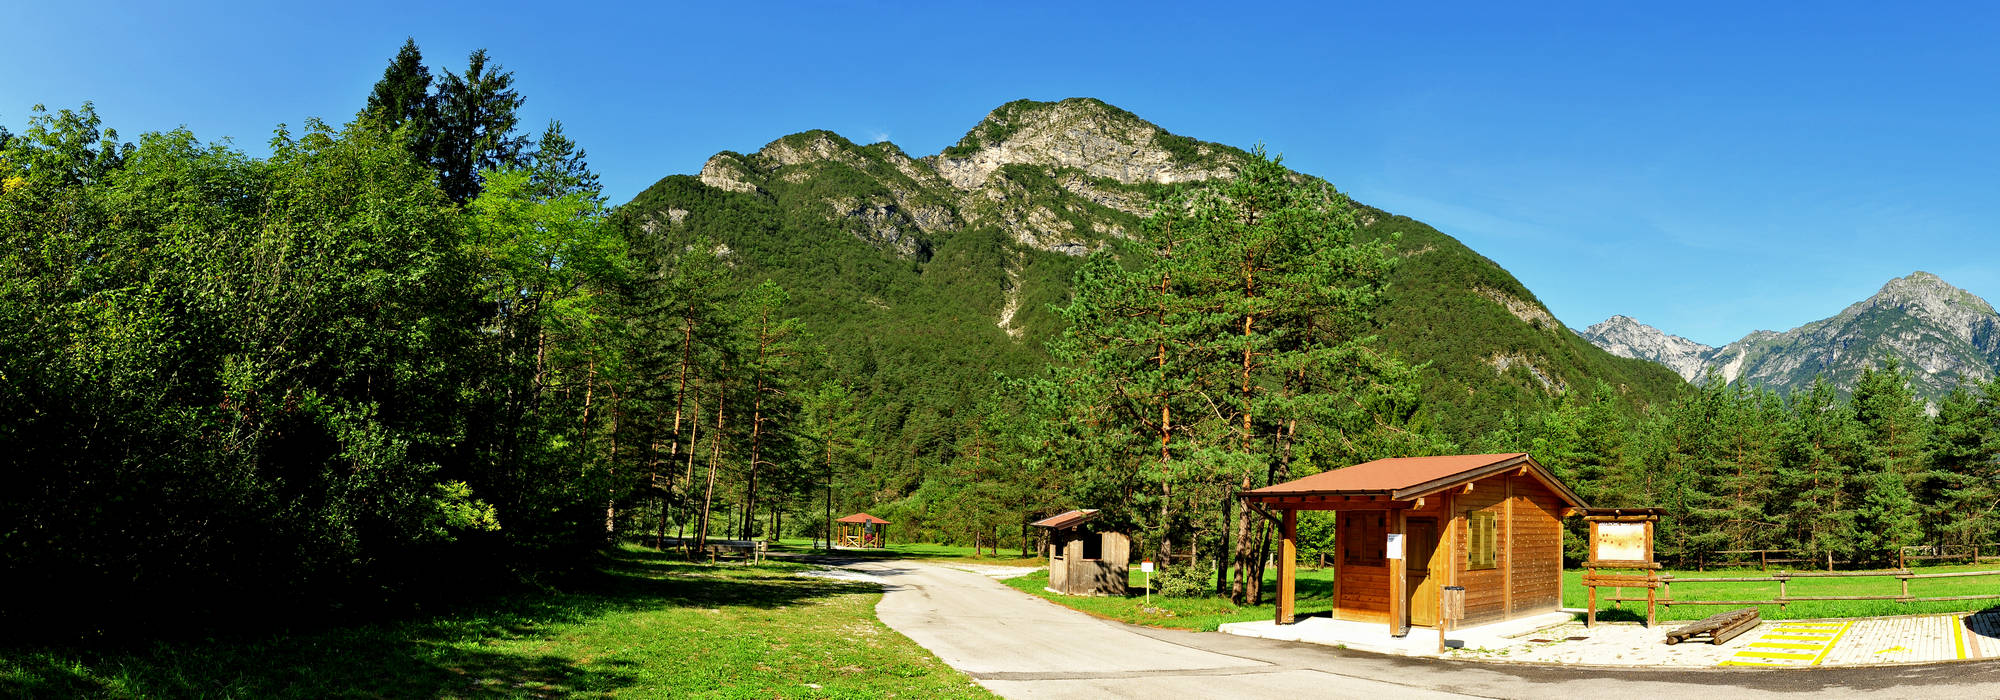 Area PicNic Sottoriva a Tramonti di Sotto, Friuli